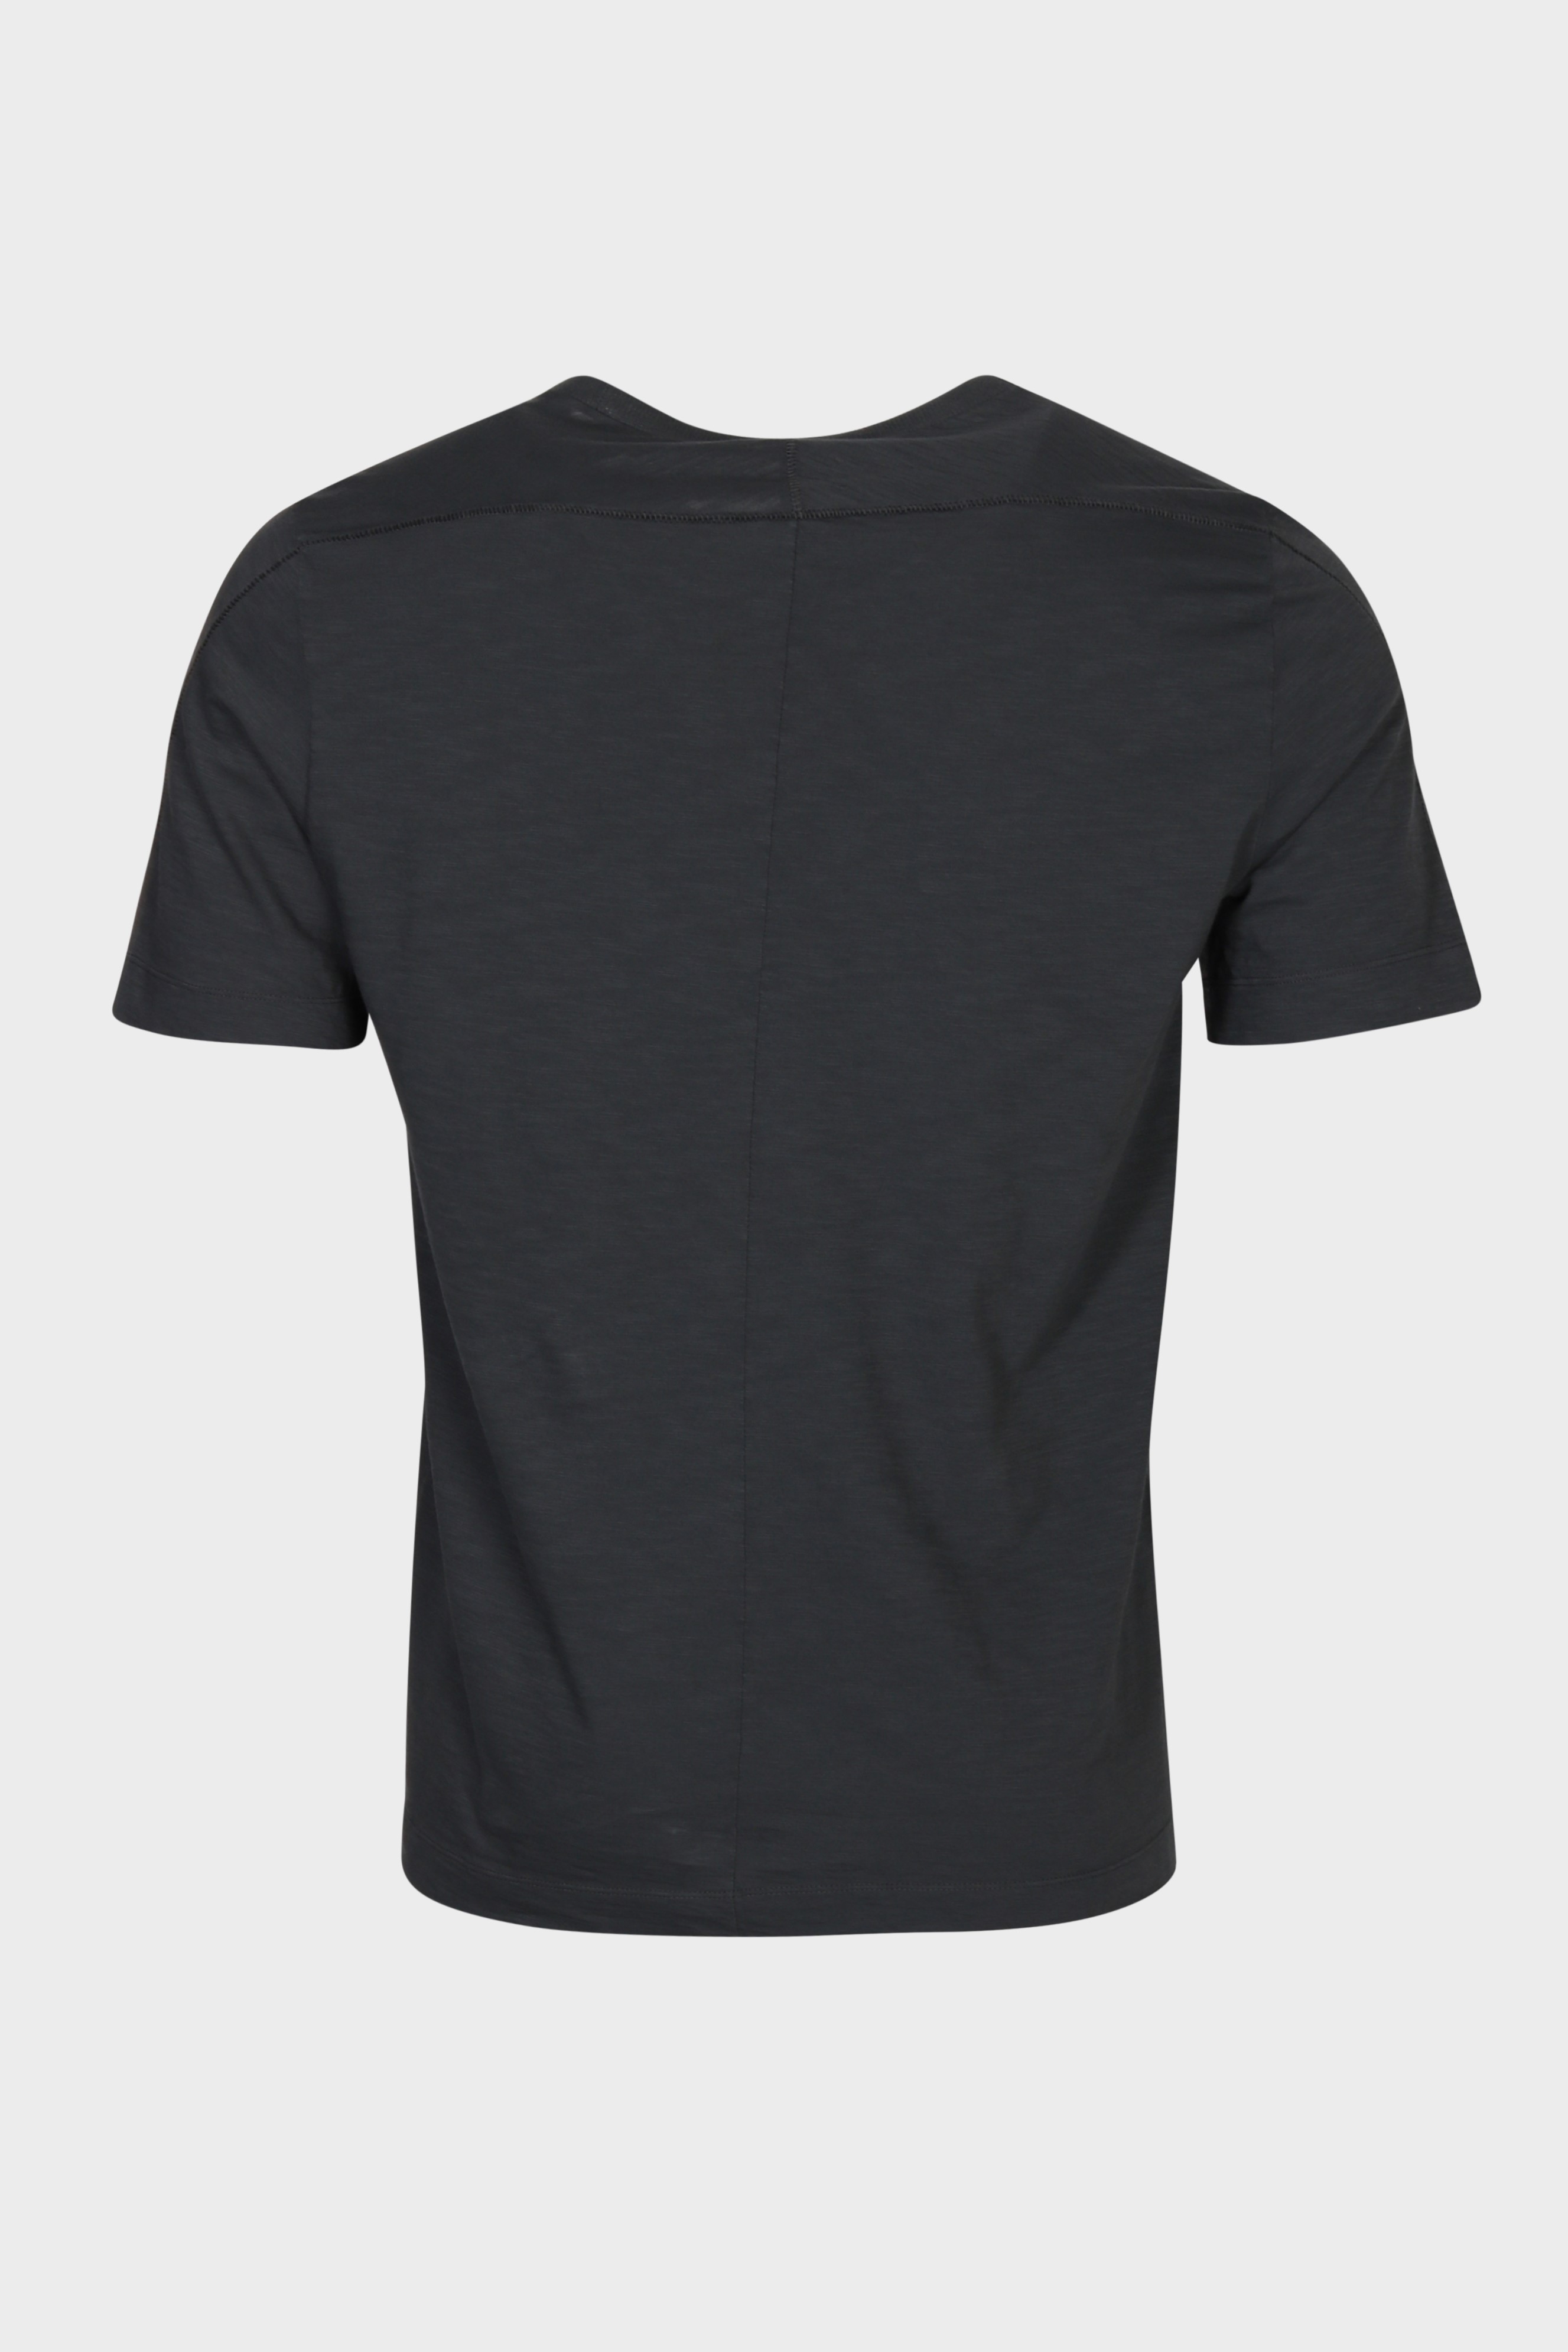 TRANSIT UOMO Cotton T-Shirt in Grey S